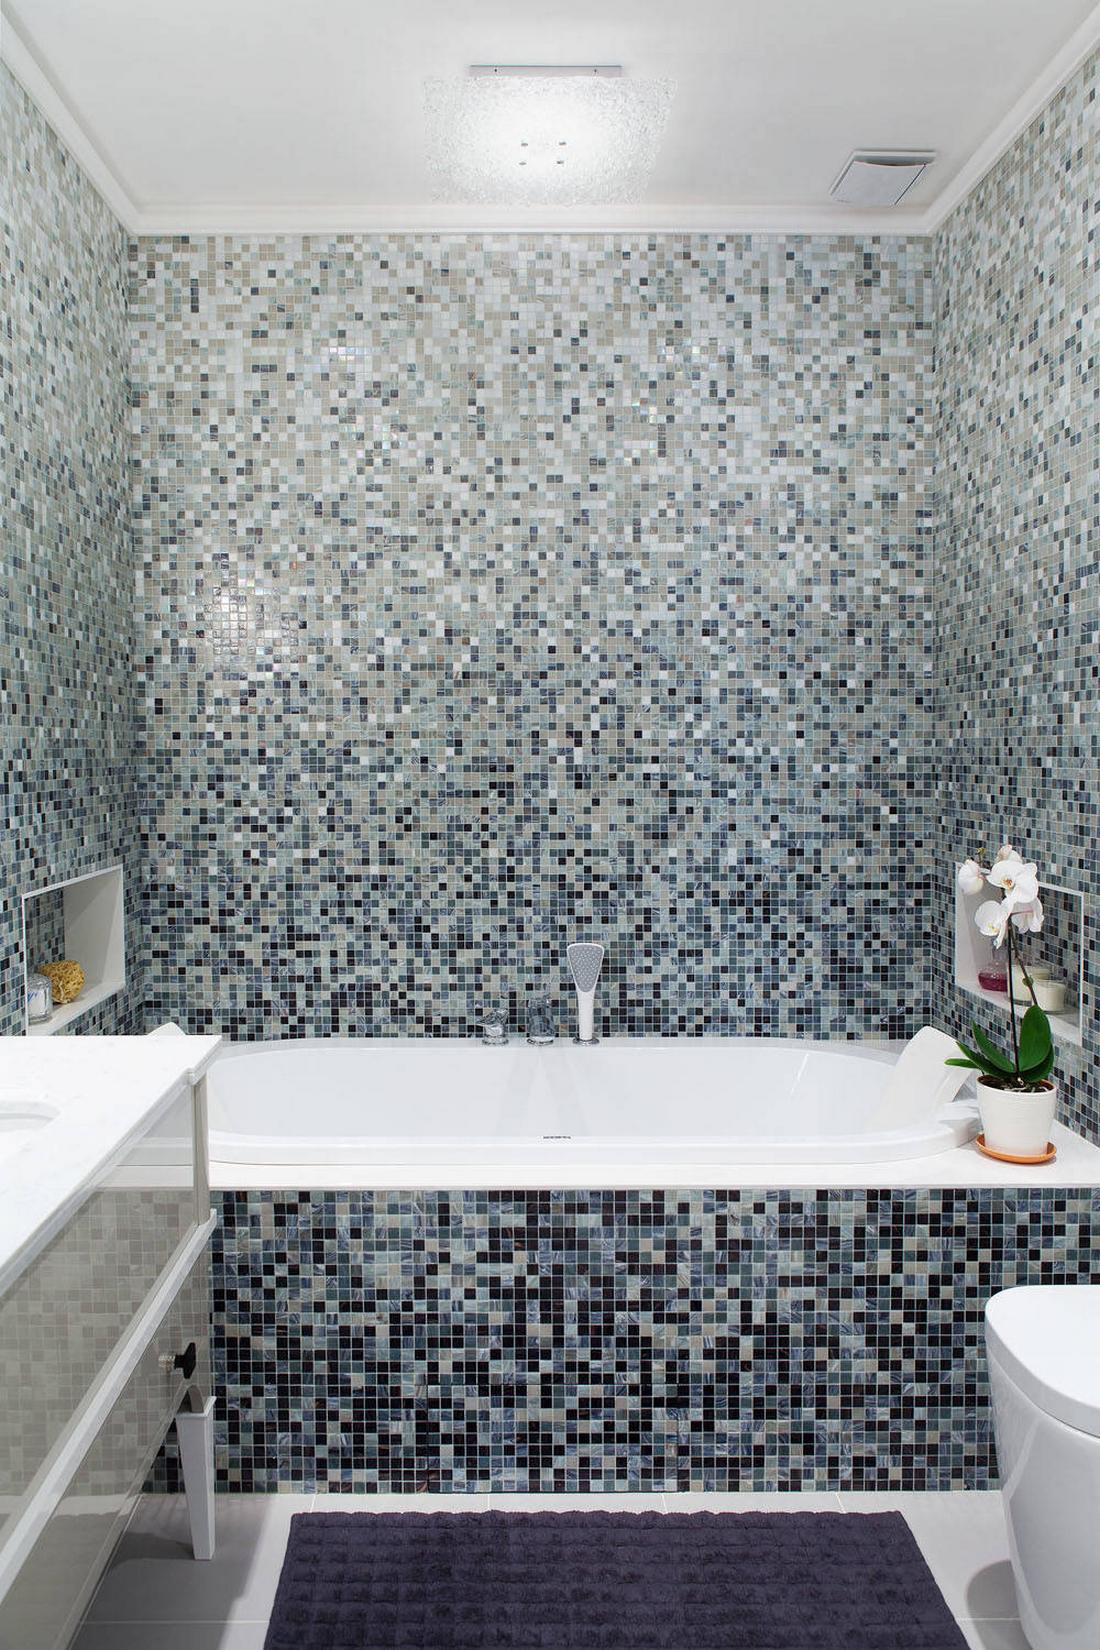 Mozaik fürdőszoba burkolat szürke és gyöngyház árnyalatokkal, modern szaniter, zuhanyfülke és kád